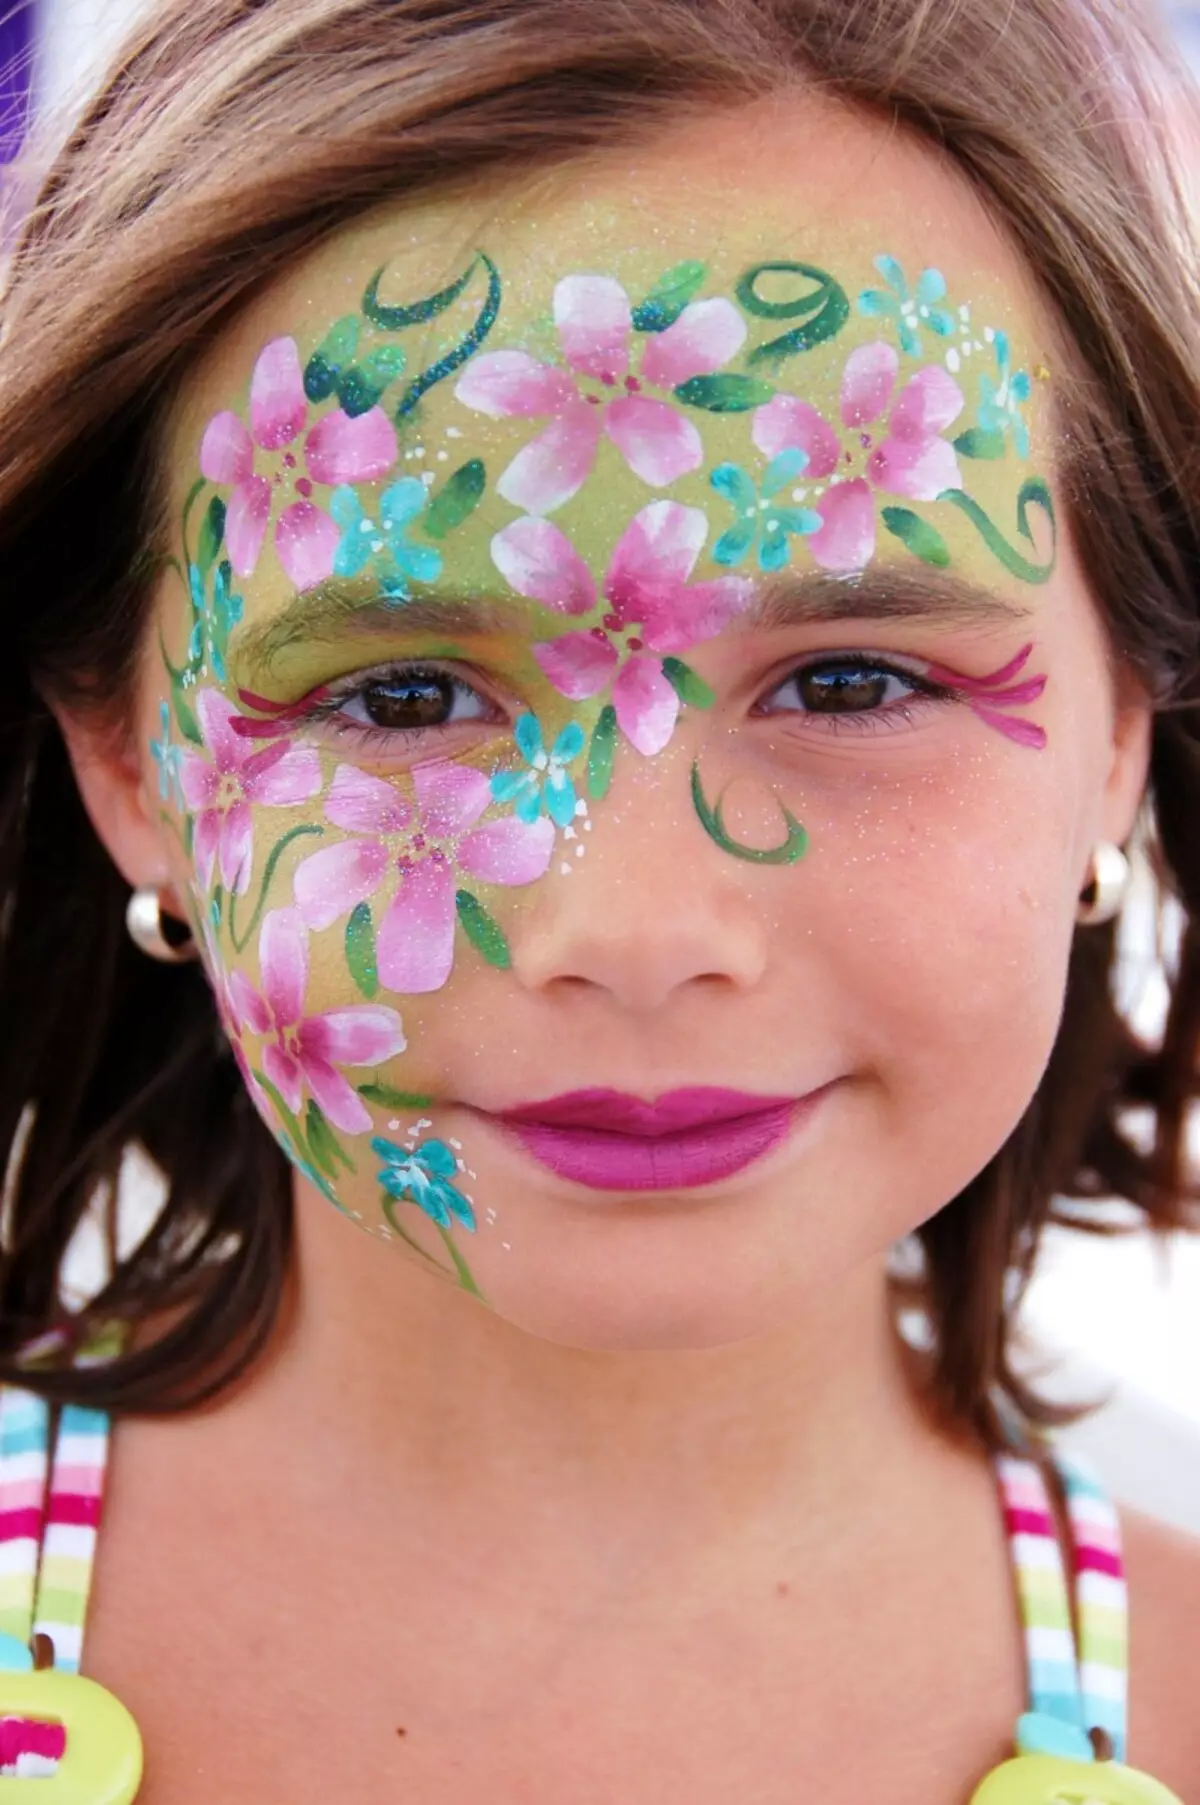 Face paint перевод. Грим для детей. Детский грим на лице. Аквагрим для девочек. Краски для рисования на лице.